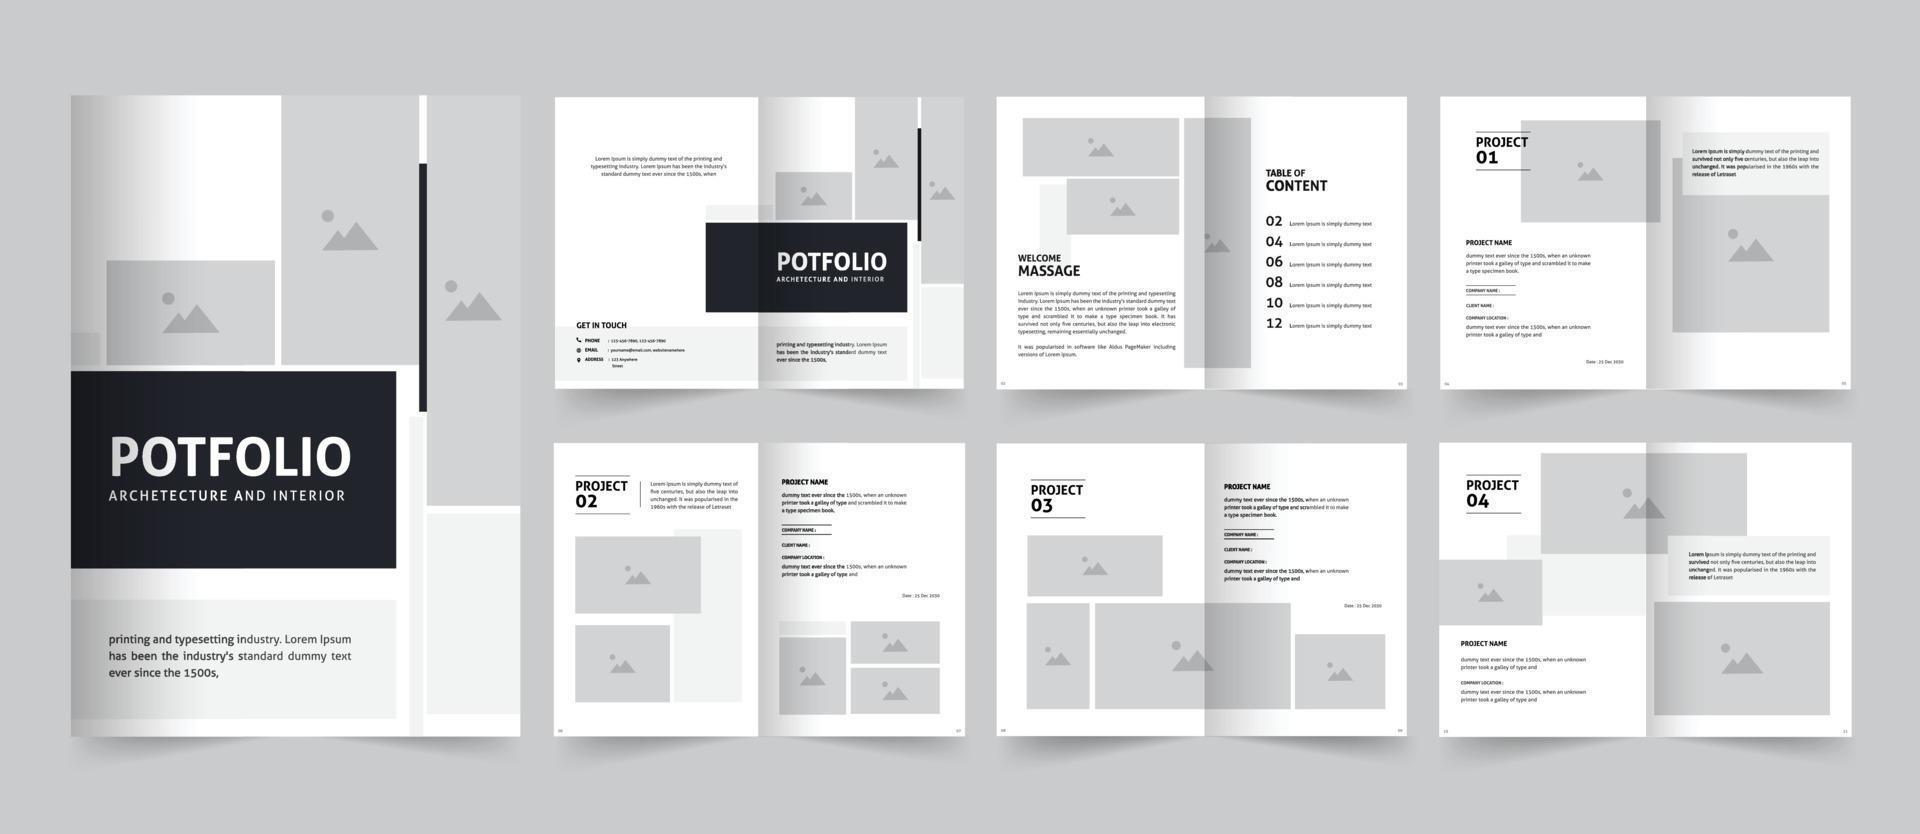 Architecture and Interior portfolio or portfolio template design ...